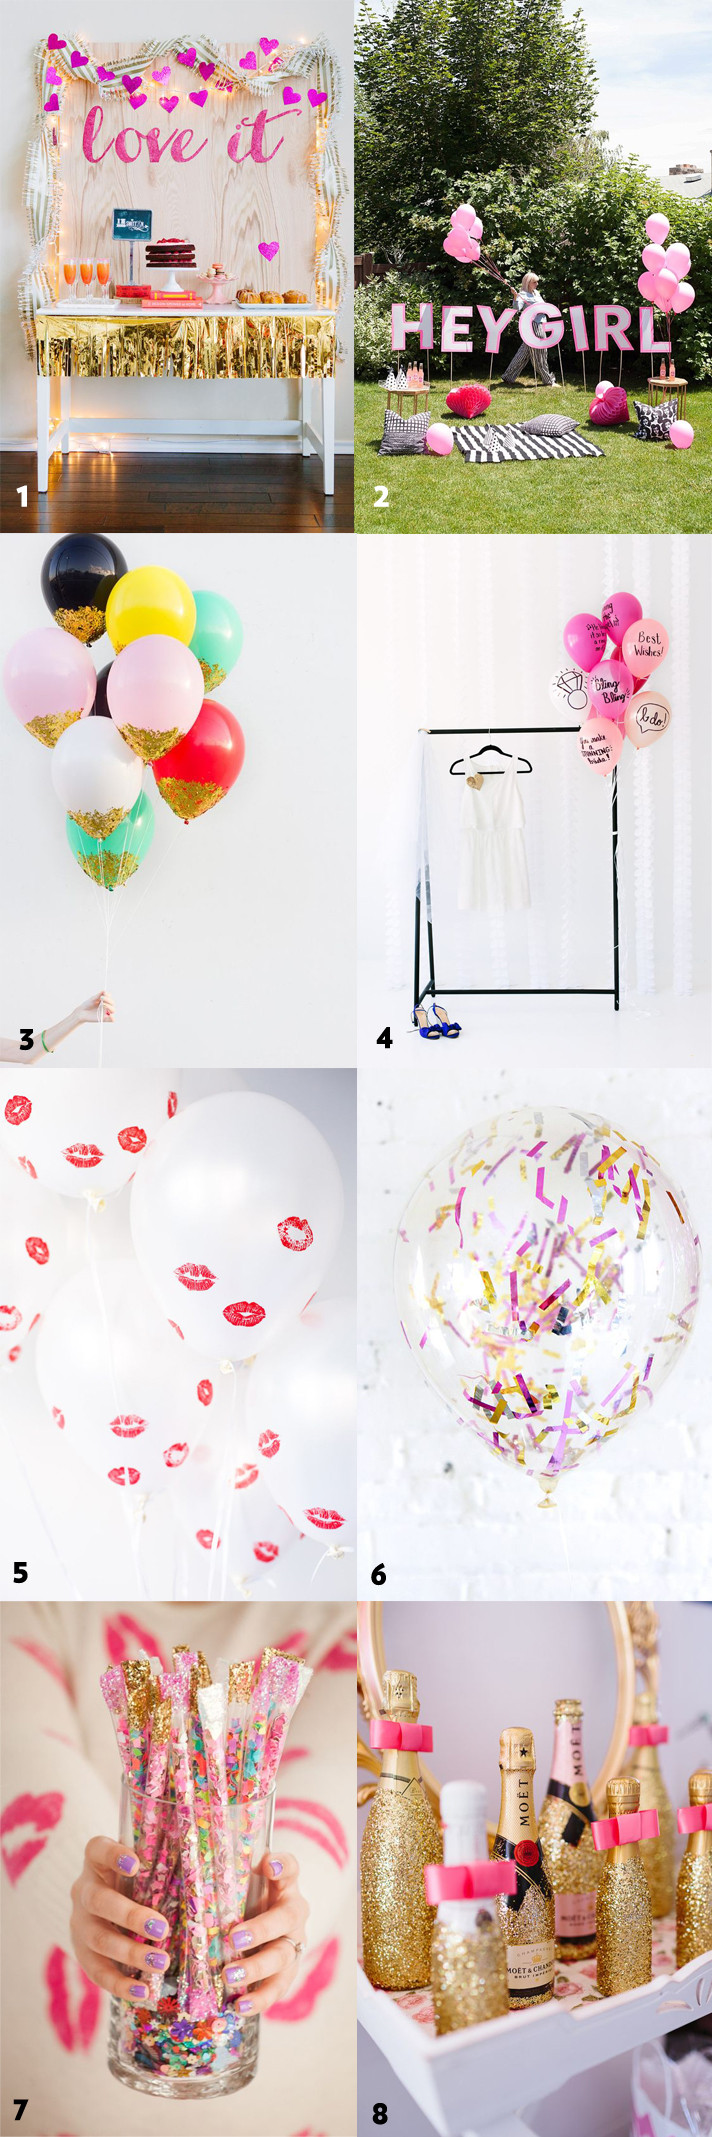 Bridal Shower Bachelorette Party Ideas
 50 Simple and Stylish DIY Bridal Shower & Bachelorette